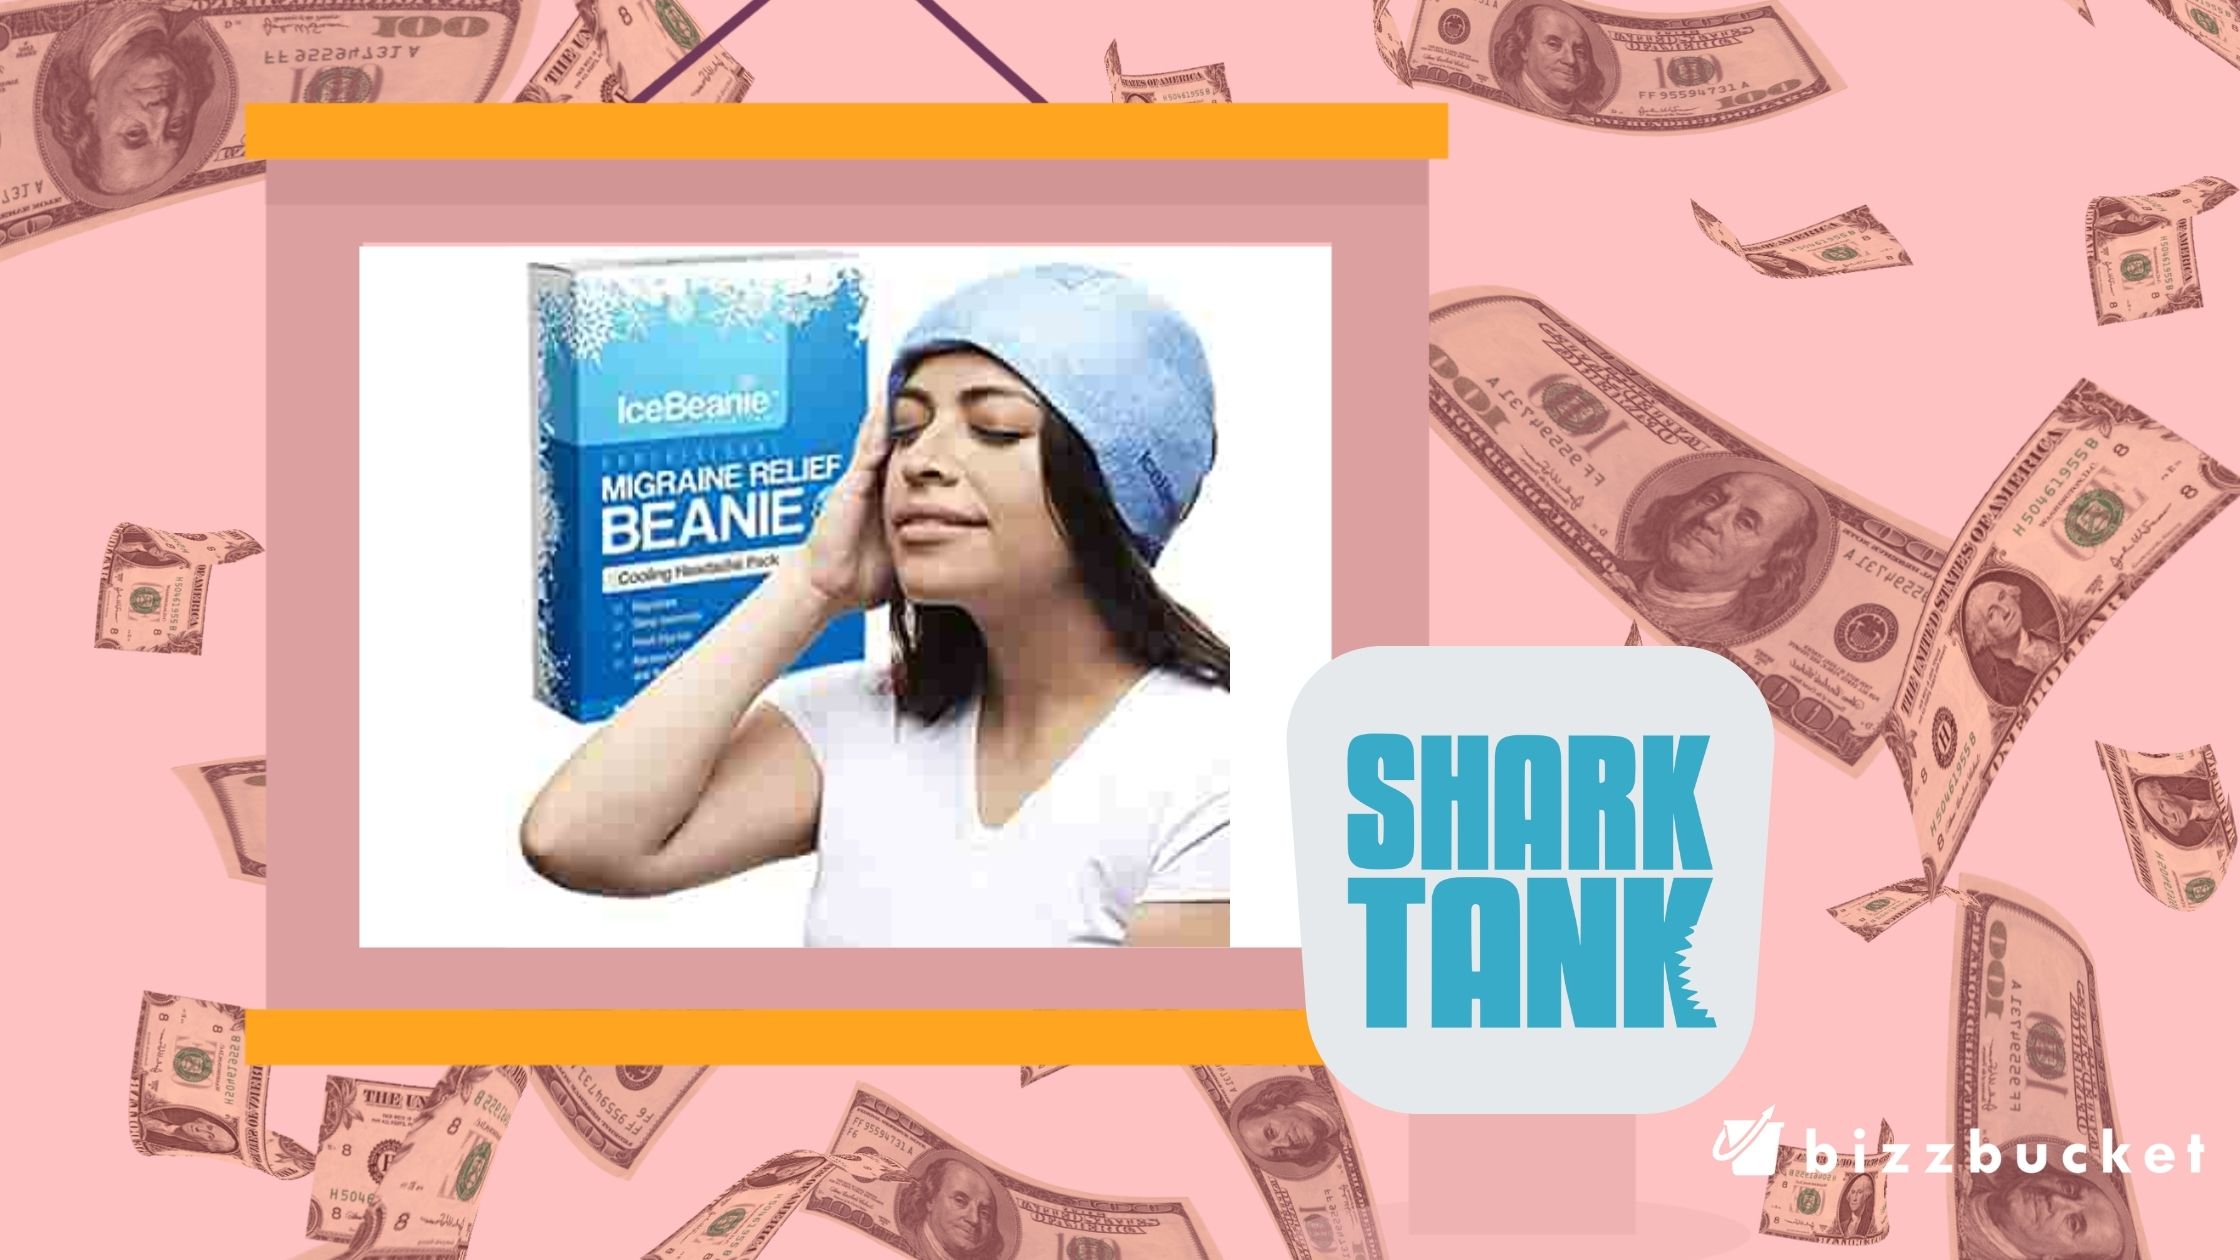 Ice Beanie shark tank update